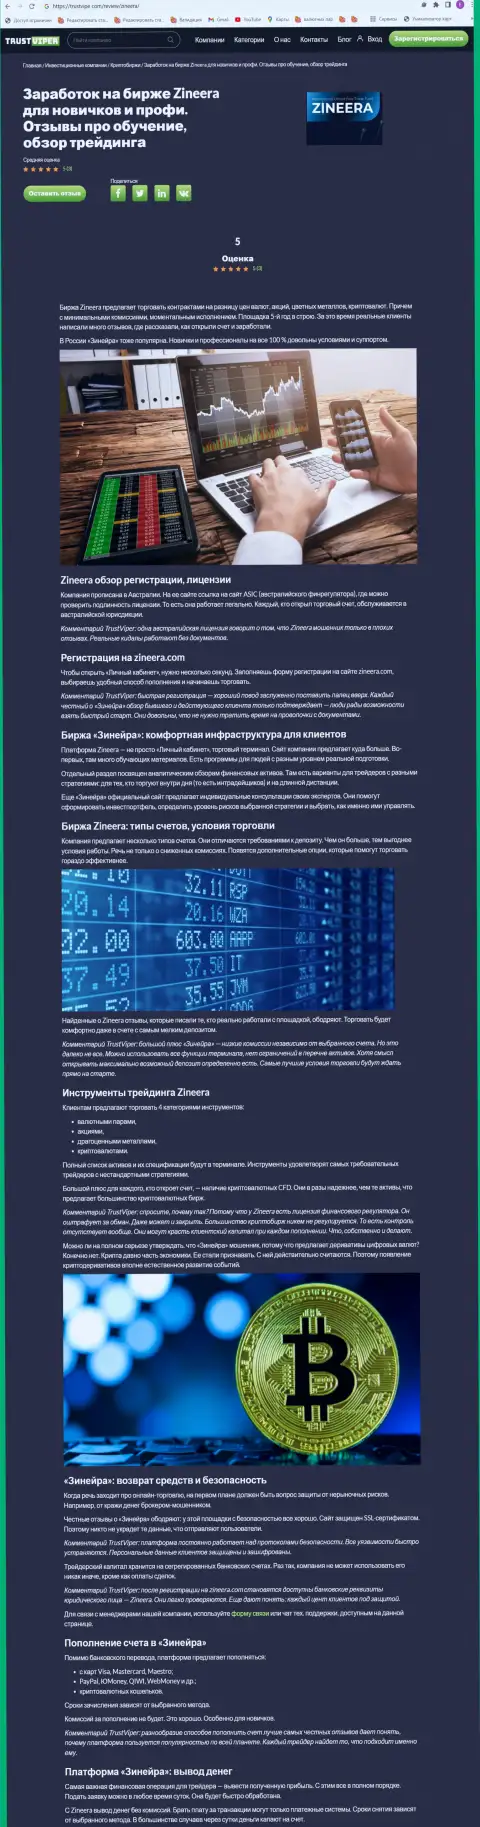 Обзор условий для спекулирования криптовалютной биржевой компании Зинеера на веб-ресурсе trustviper com